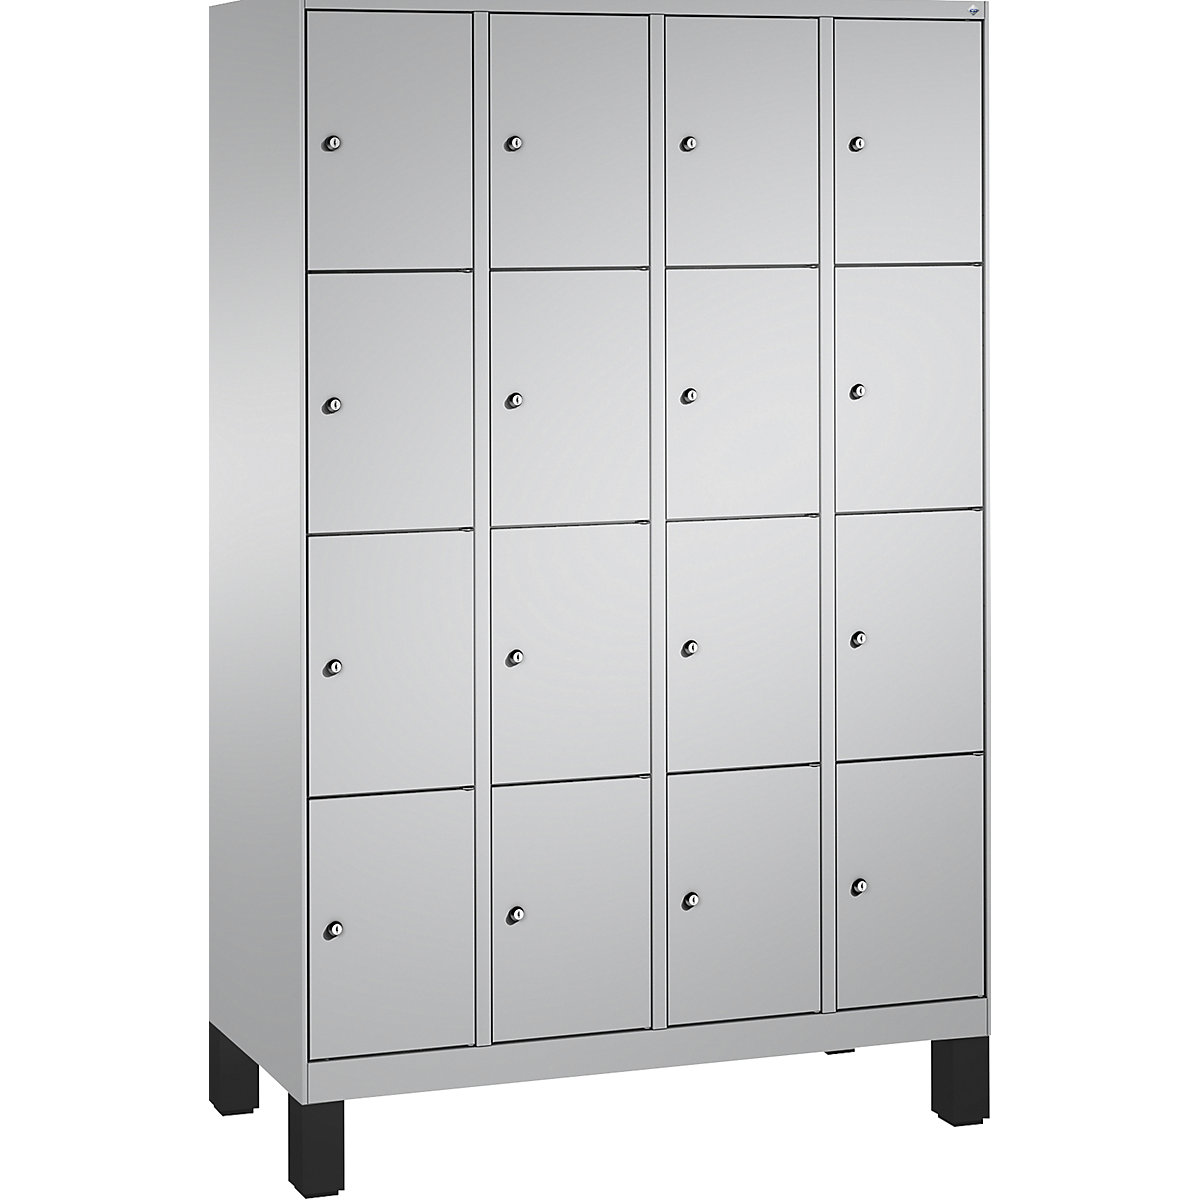 Armoire à casiers sur pieds EVOLO – C+P, 4 compartiments, 4 casiers chacun, largeur compartiments 300 mm, aluminium / aluminium-17